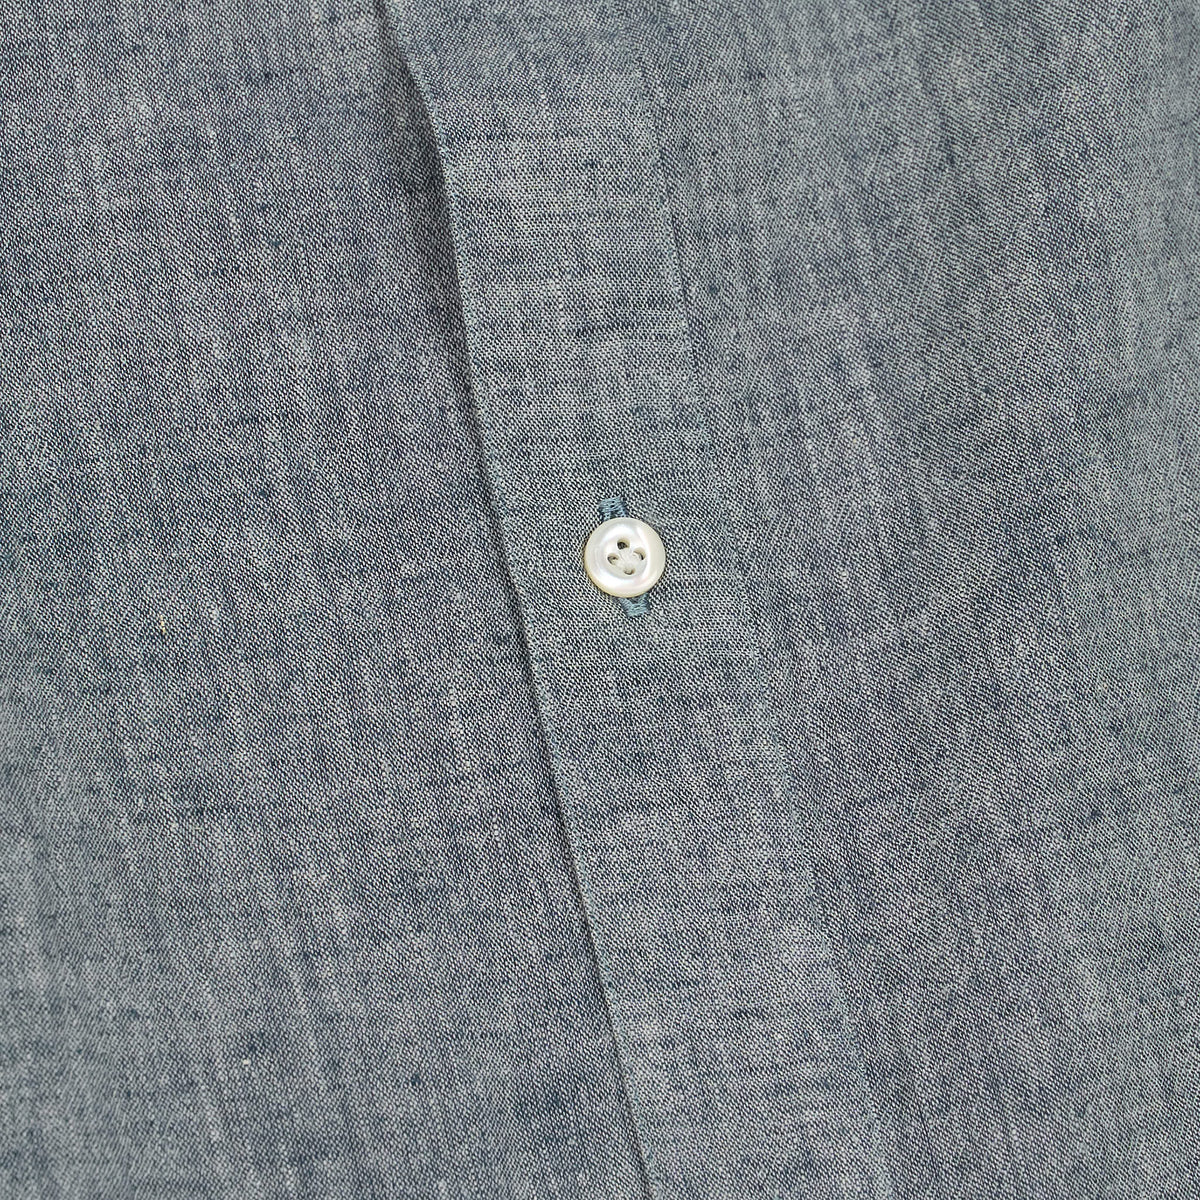 A.B.C.L Long Sleeve Linen Cotton Pocket Shirt